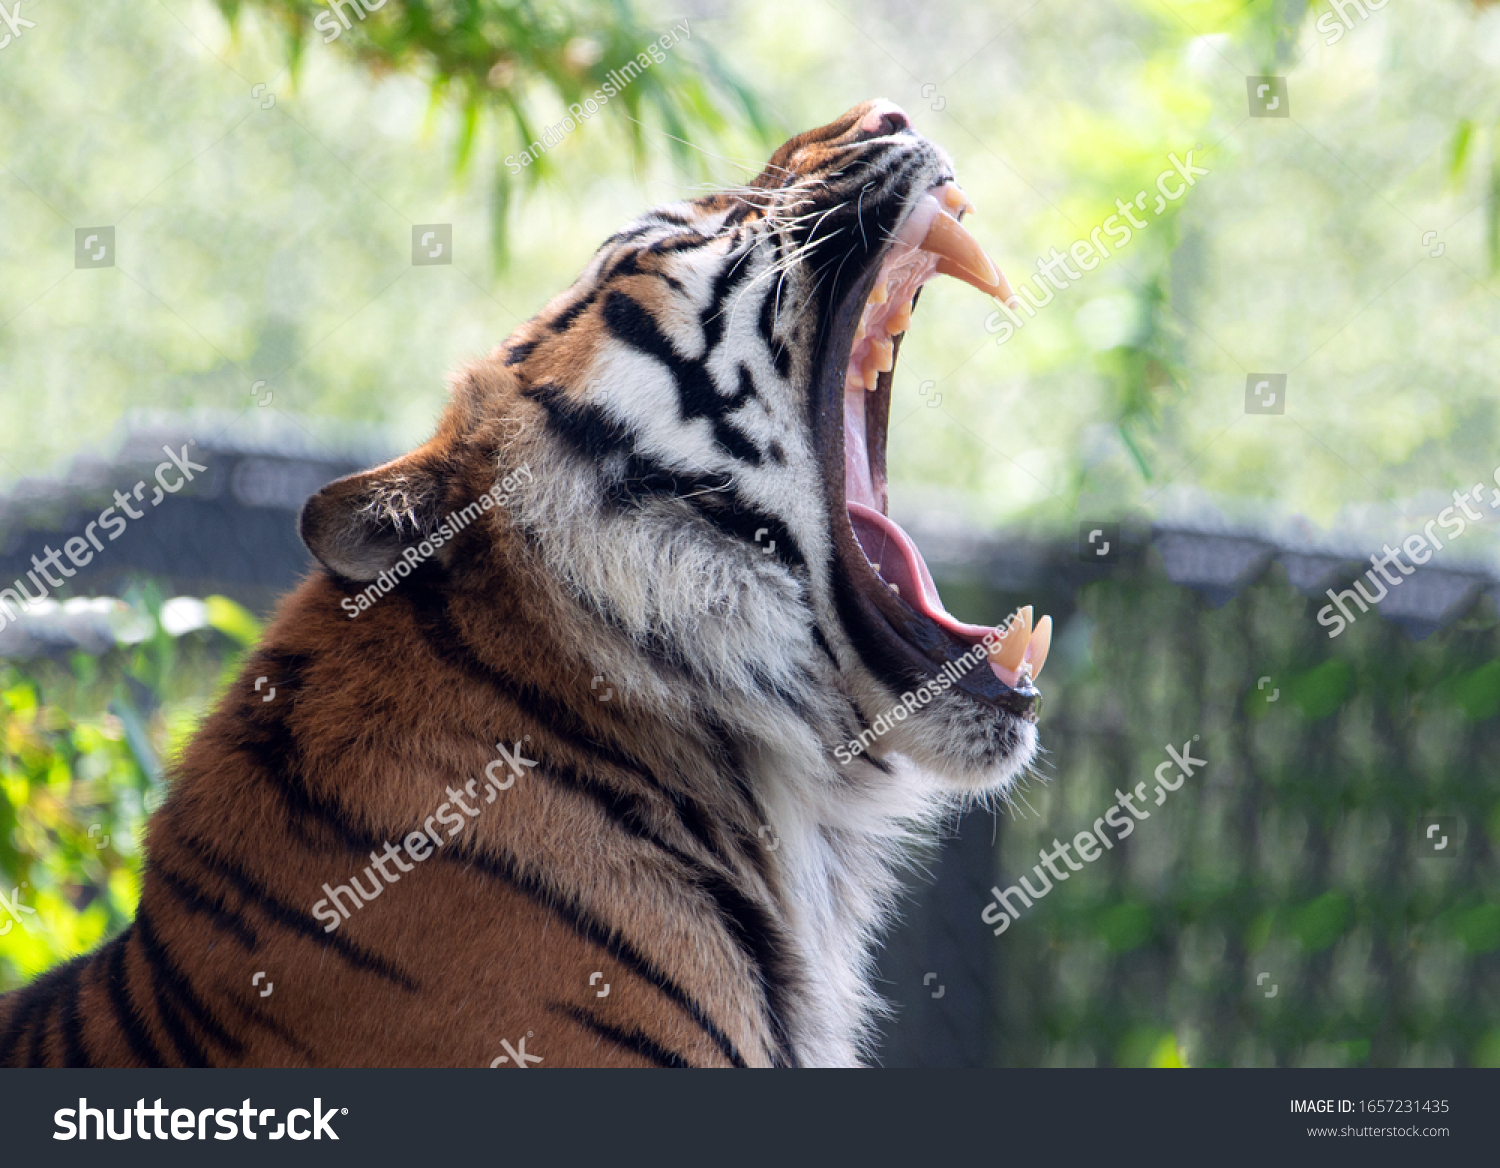 口を開いて横顔にスマトラの虎 の写真素材 今すぐ編集